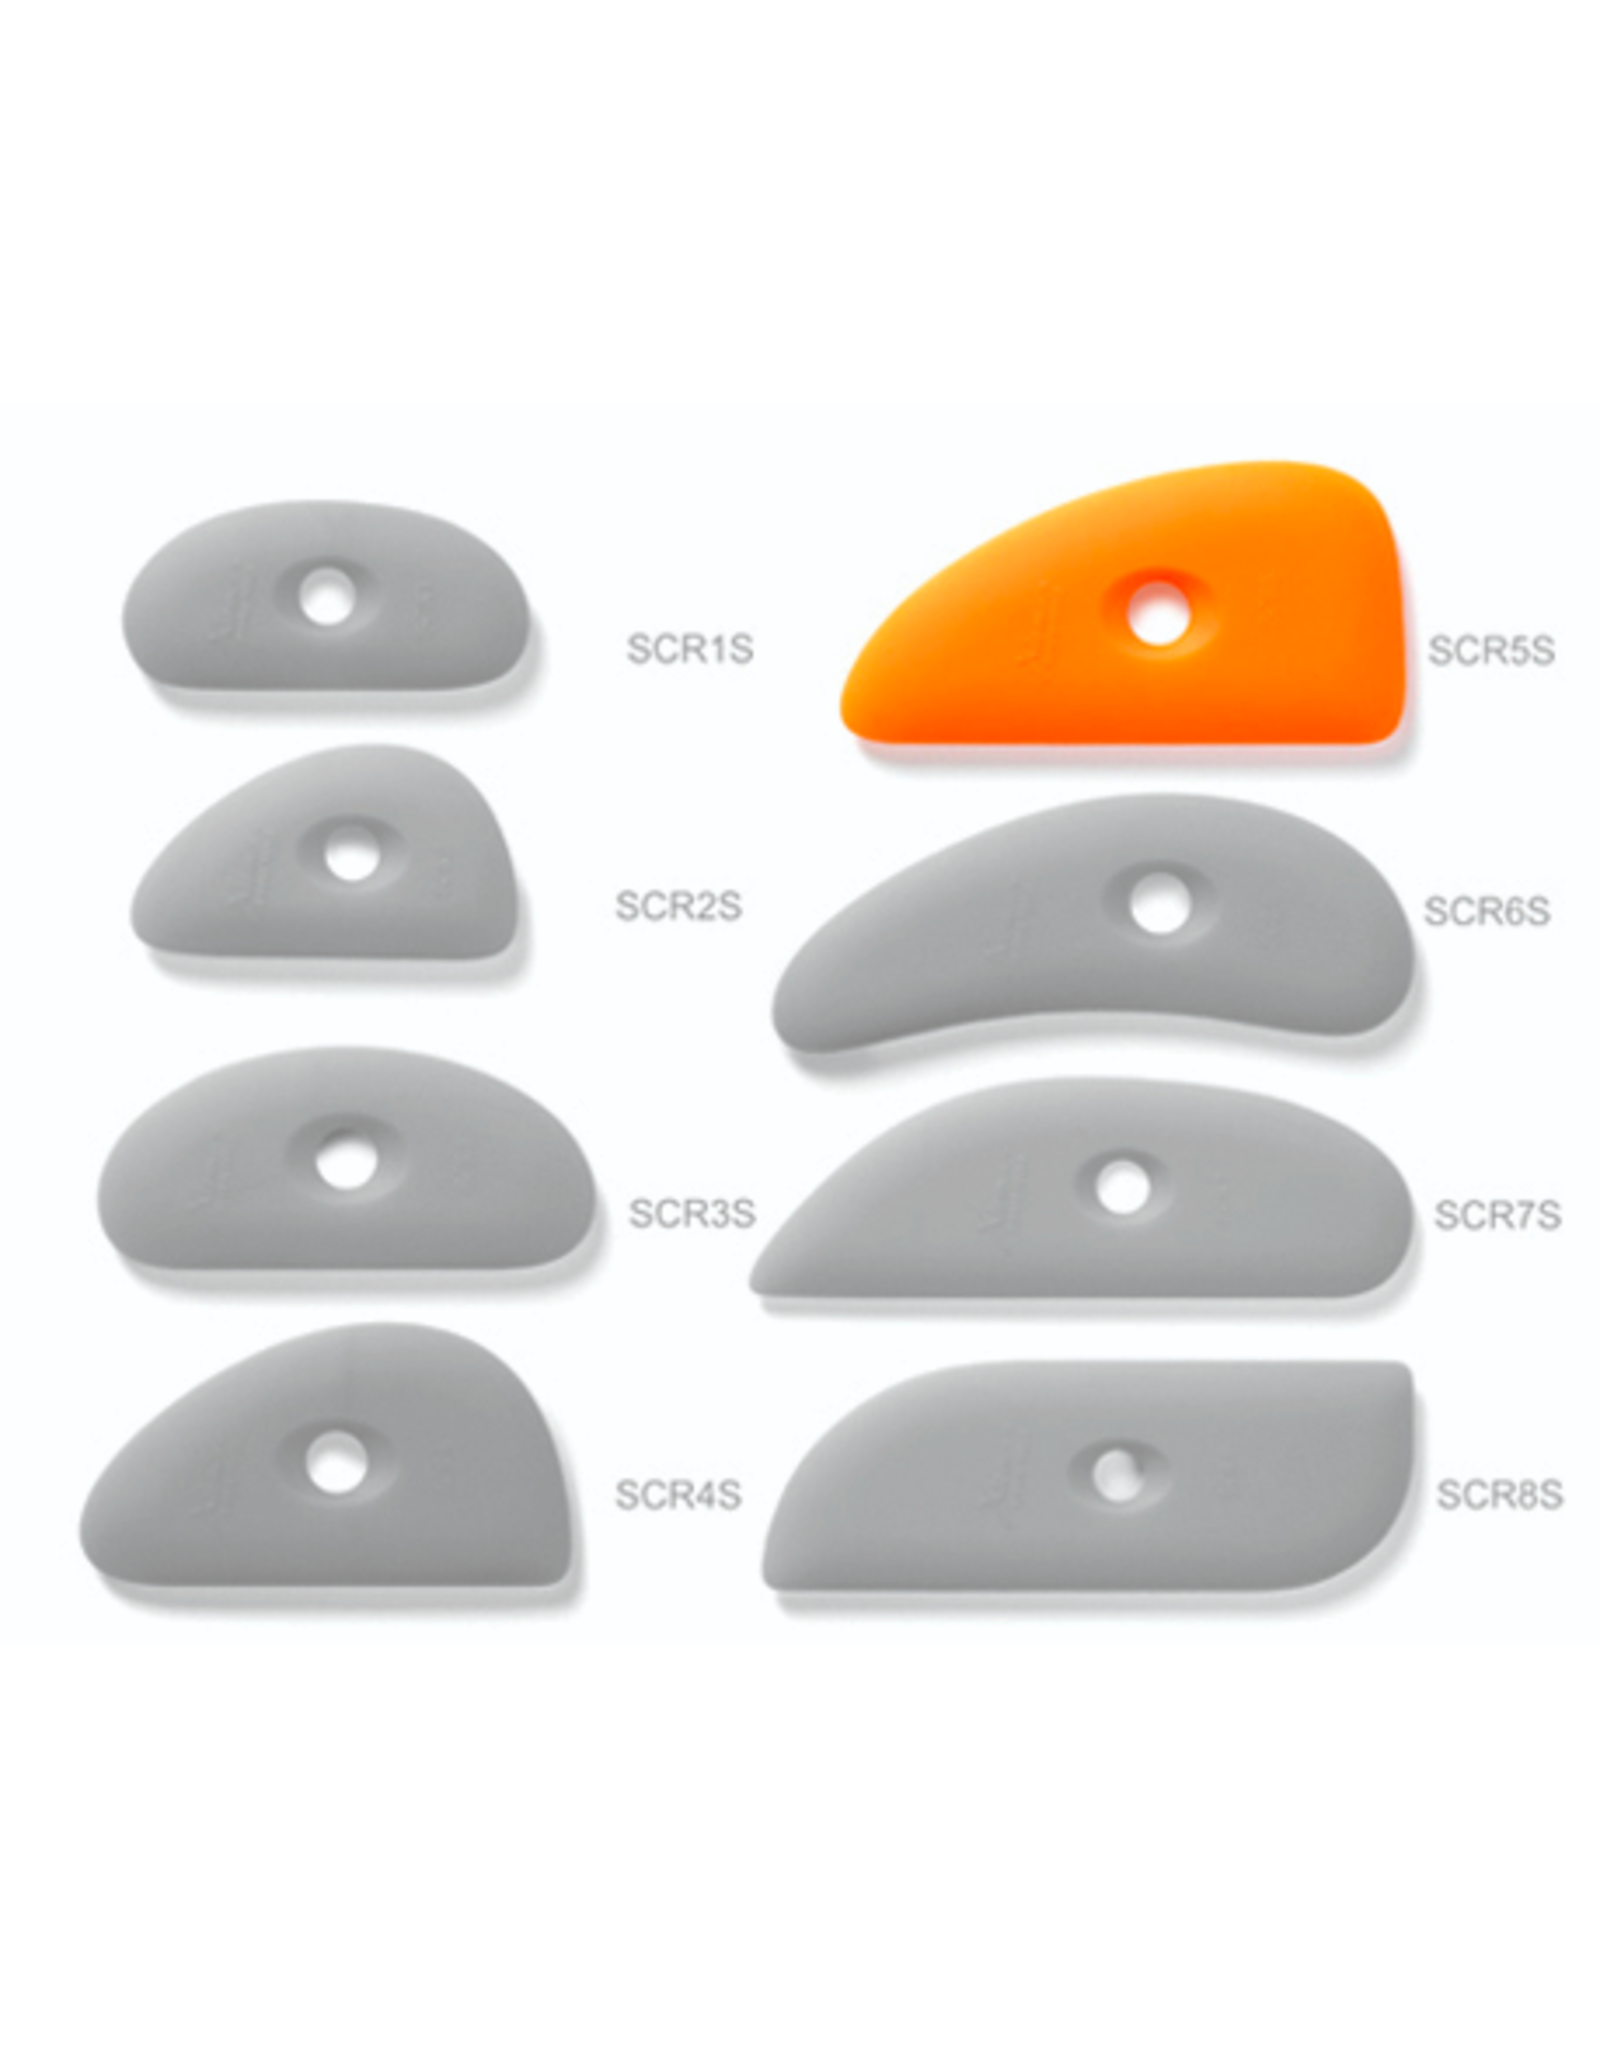 XIEM Soft Silicone Rib 5 - Orange